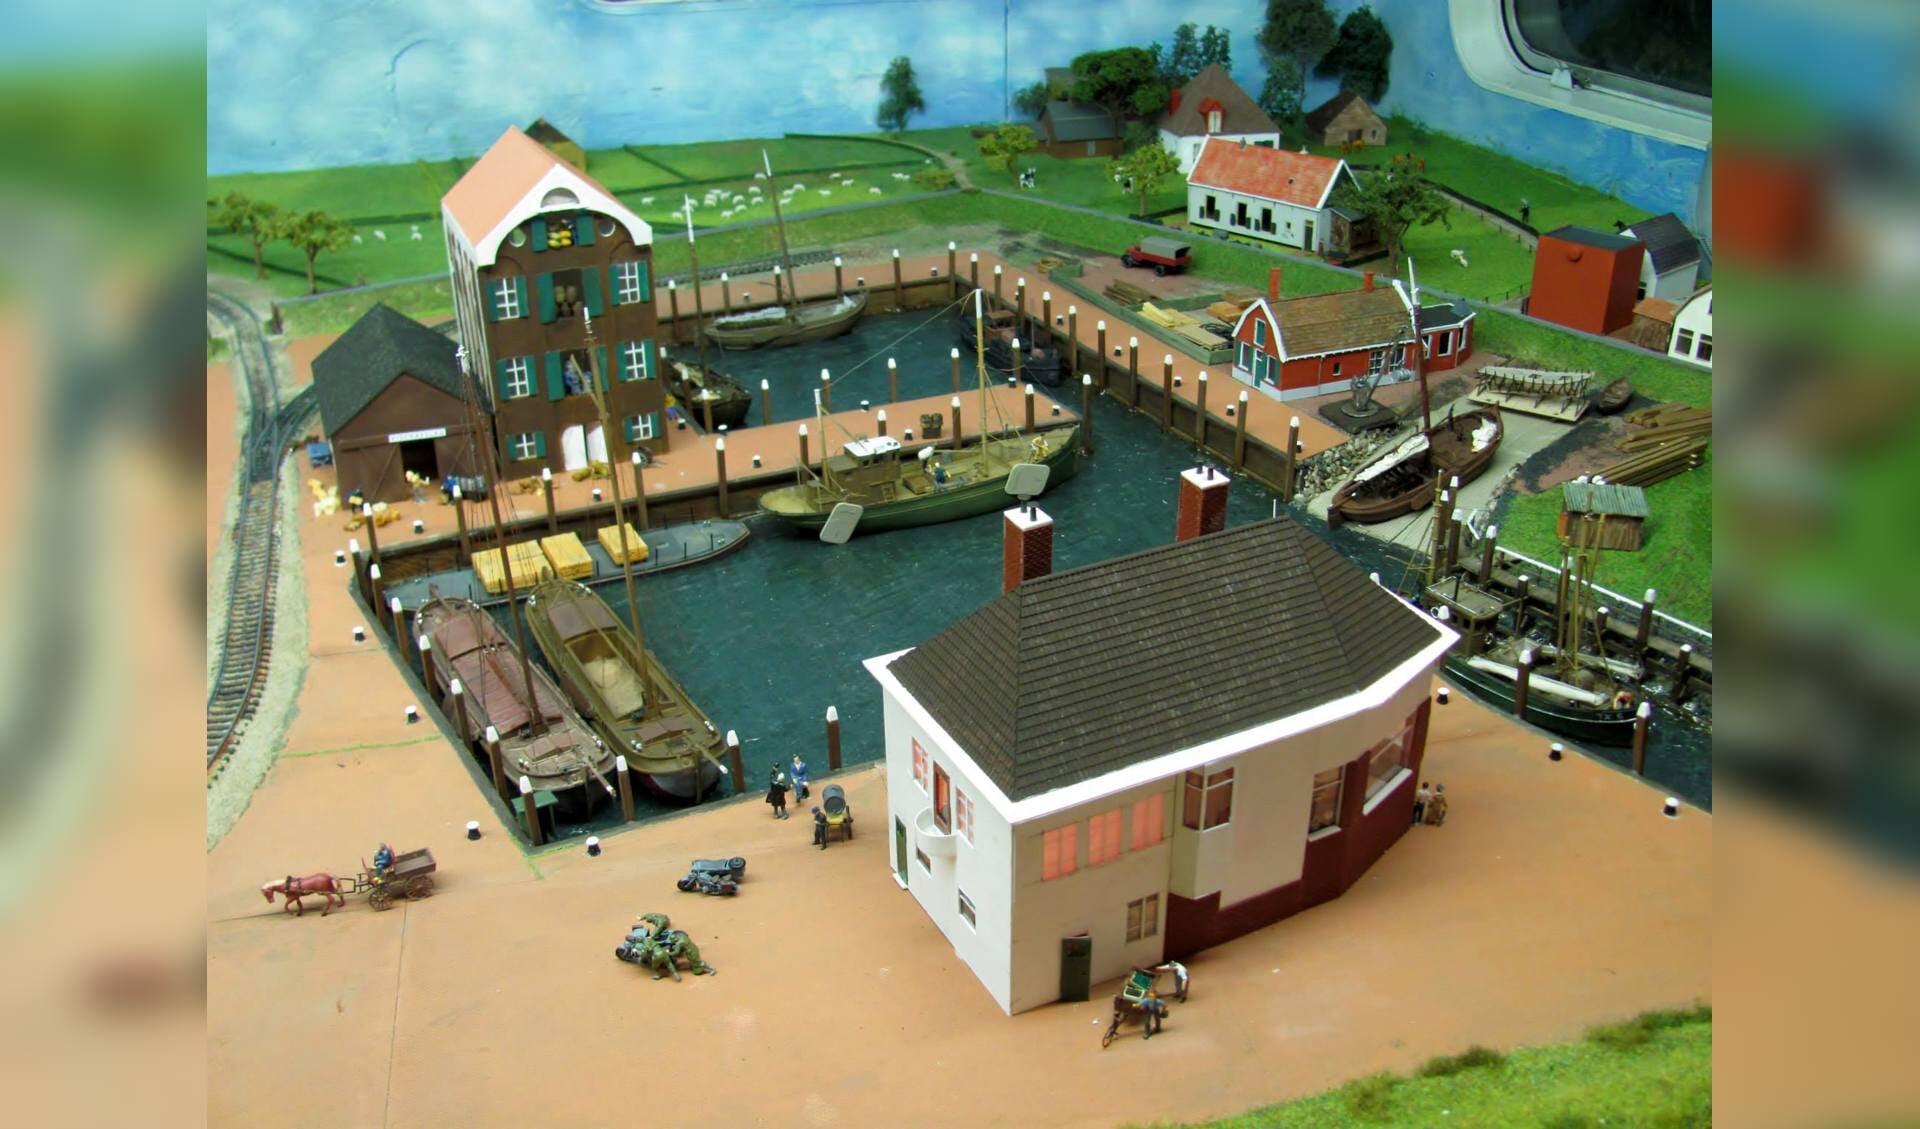 Fragment uit de maquette van de Modelspoorclub, met de haven van Oudeschild in de  periode 1940-1945. 